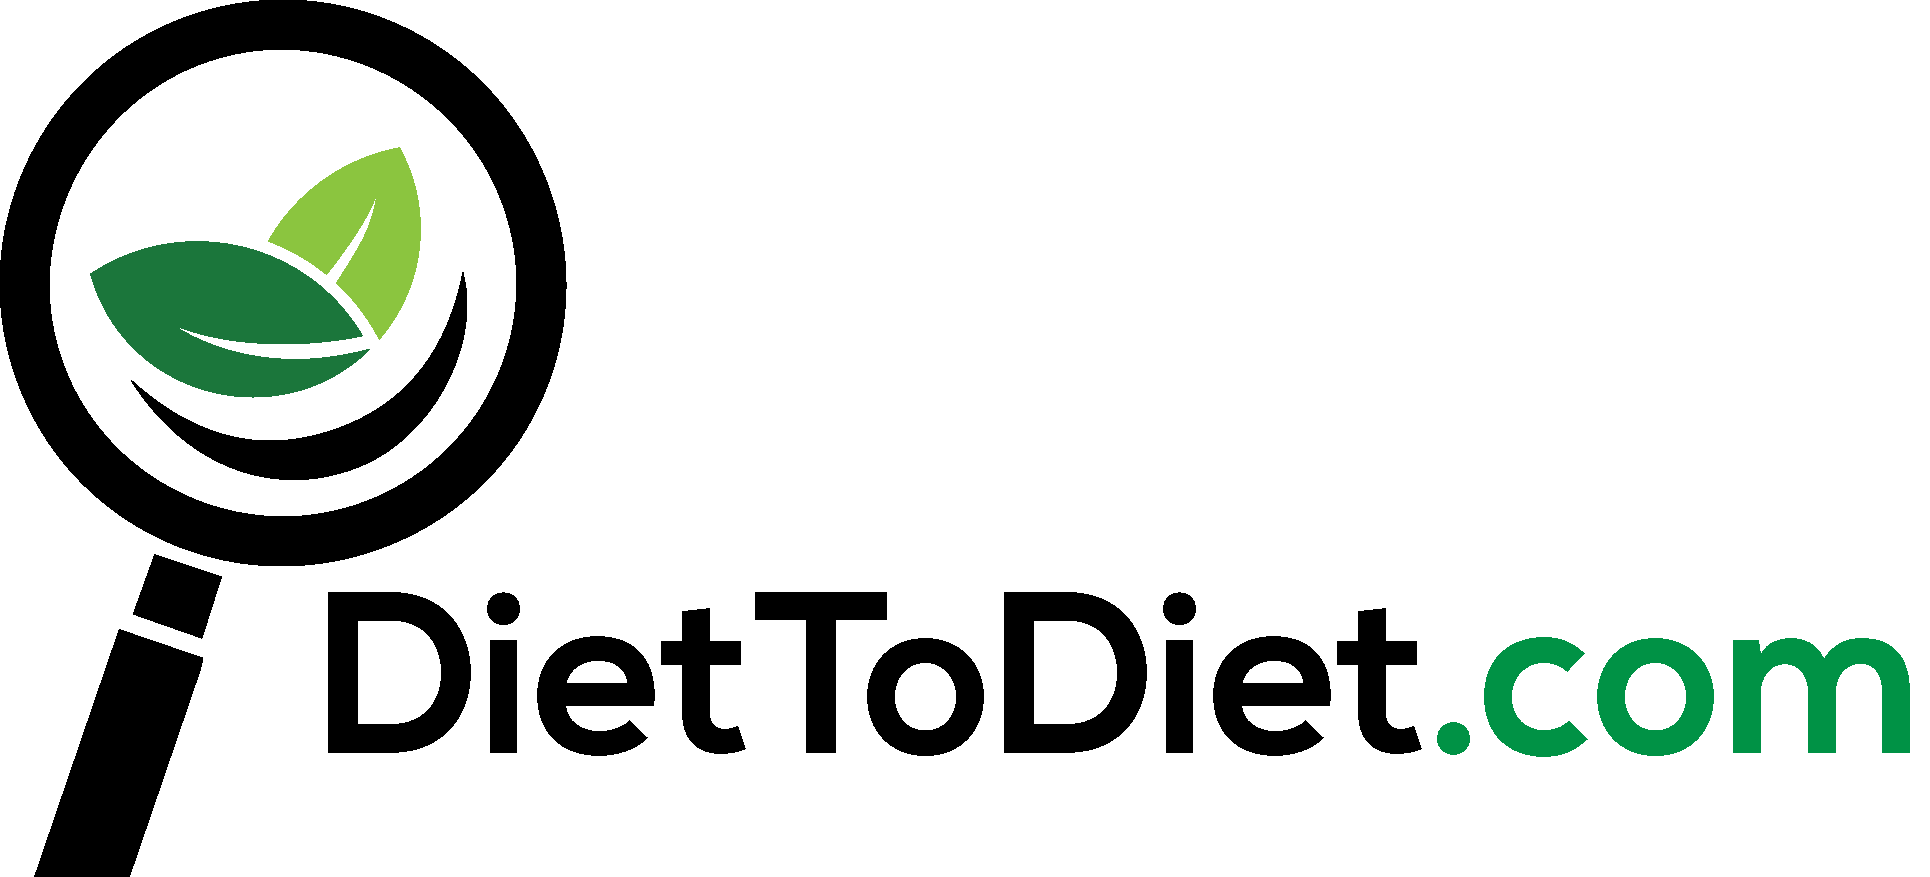 DietToDiet